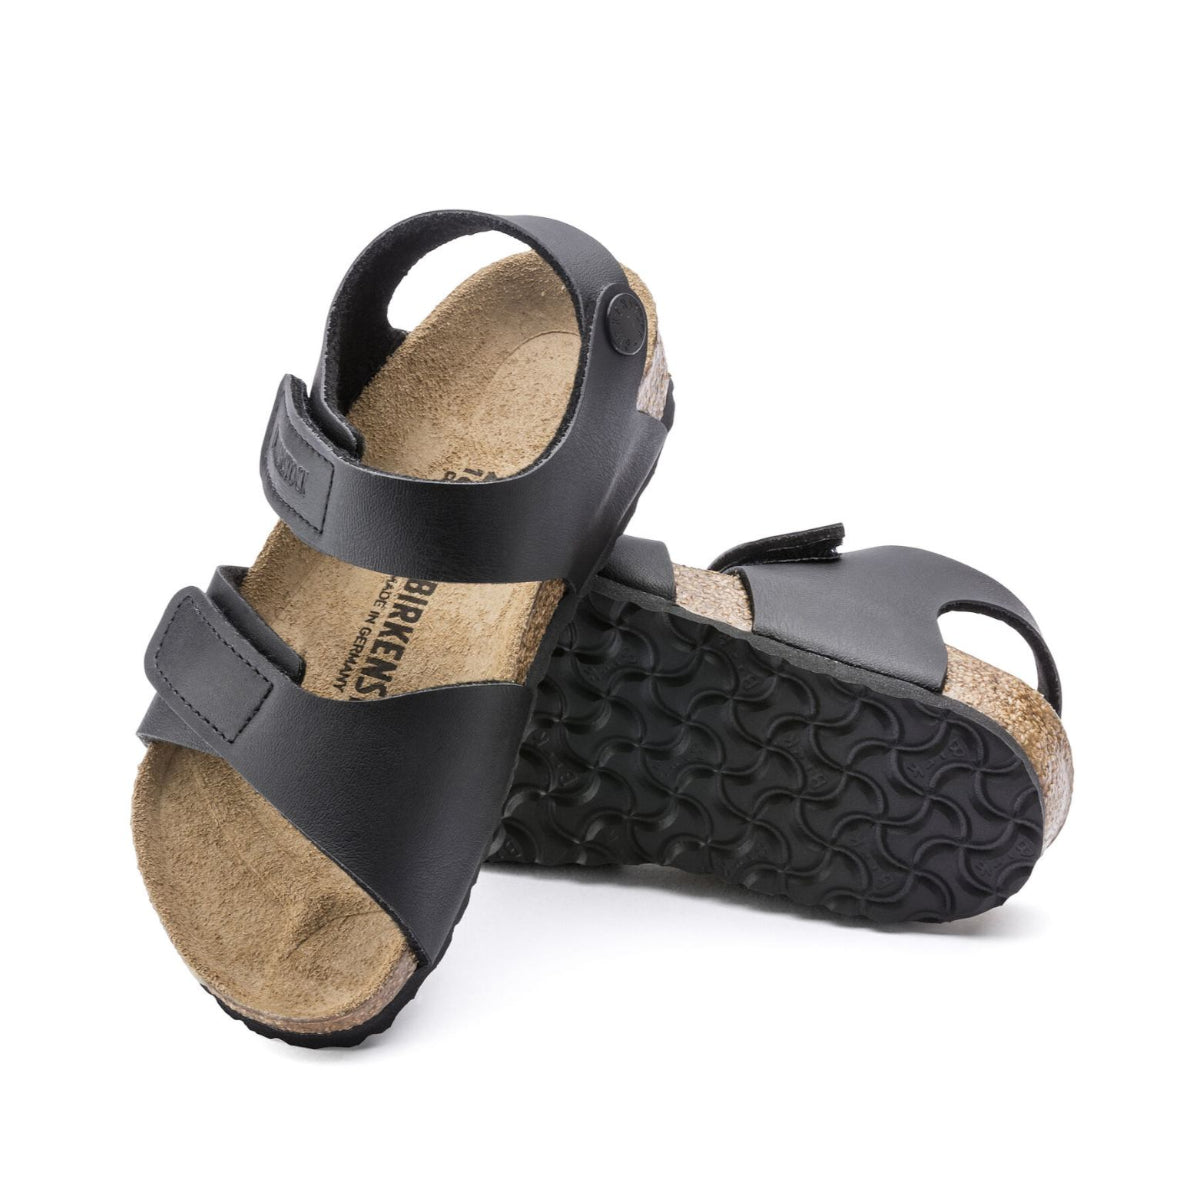 Kids Birkenstock black sandals with cork footbed